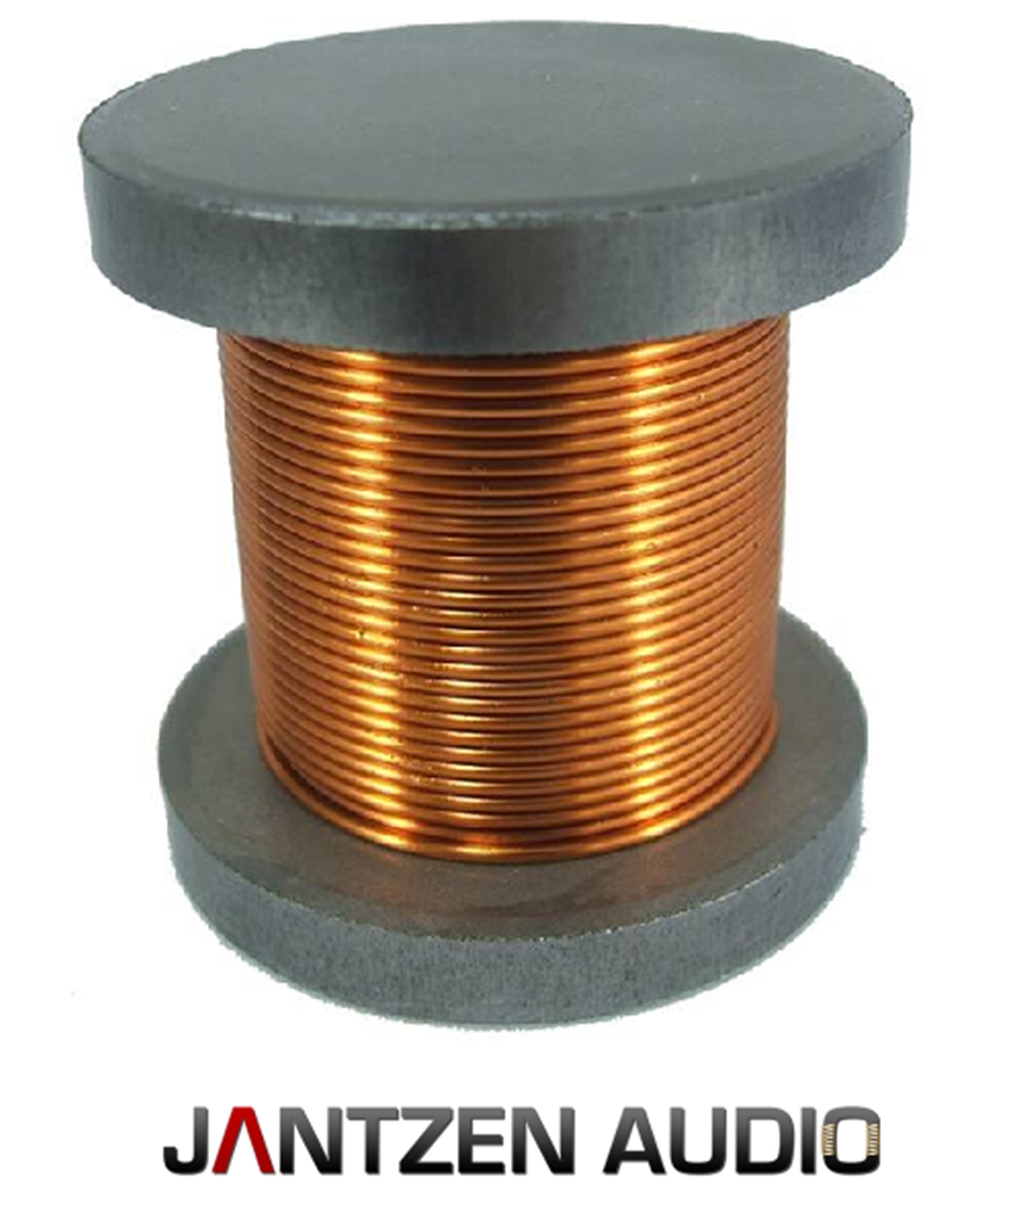 Катушка индуктивности 500 мгн. Катушка индуктивности Jantzen Iron Core Coil + Discs. Катушка индуктивности bn3m 20003a. Jantzen-Audio восковая катушка индуктор.